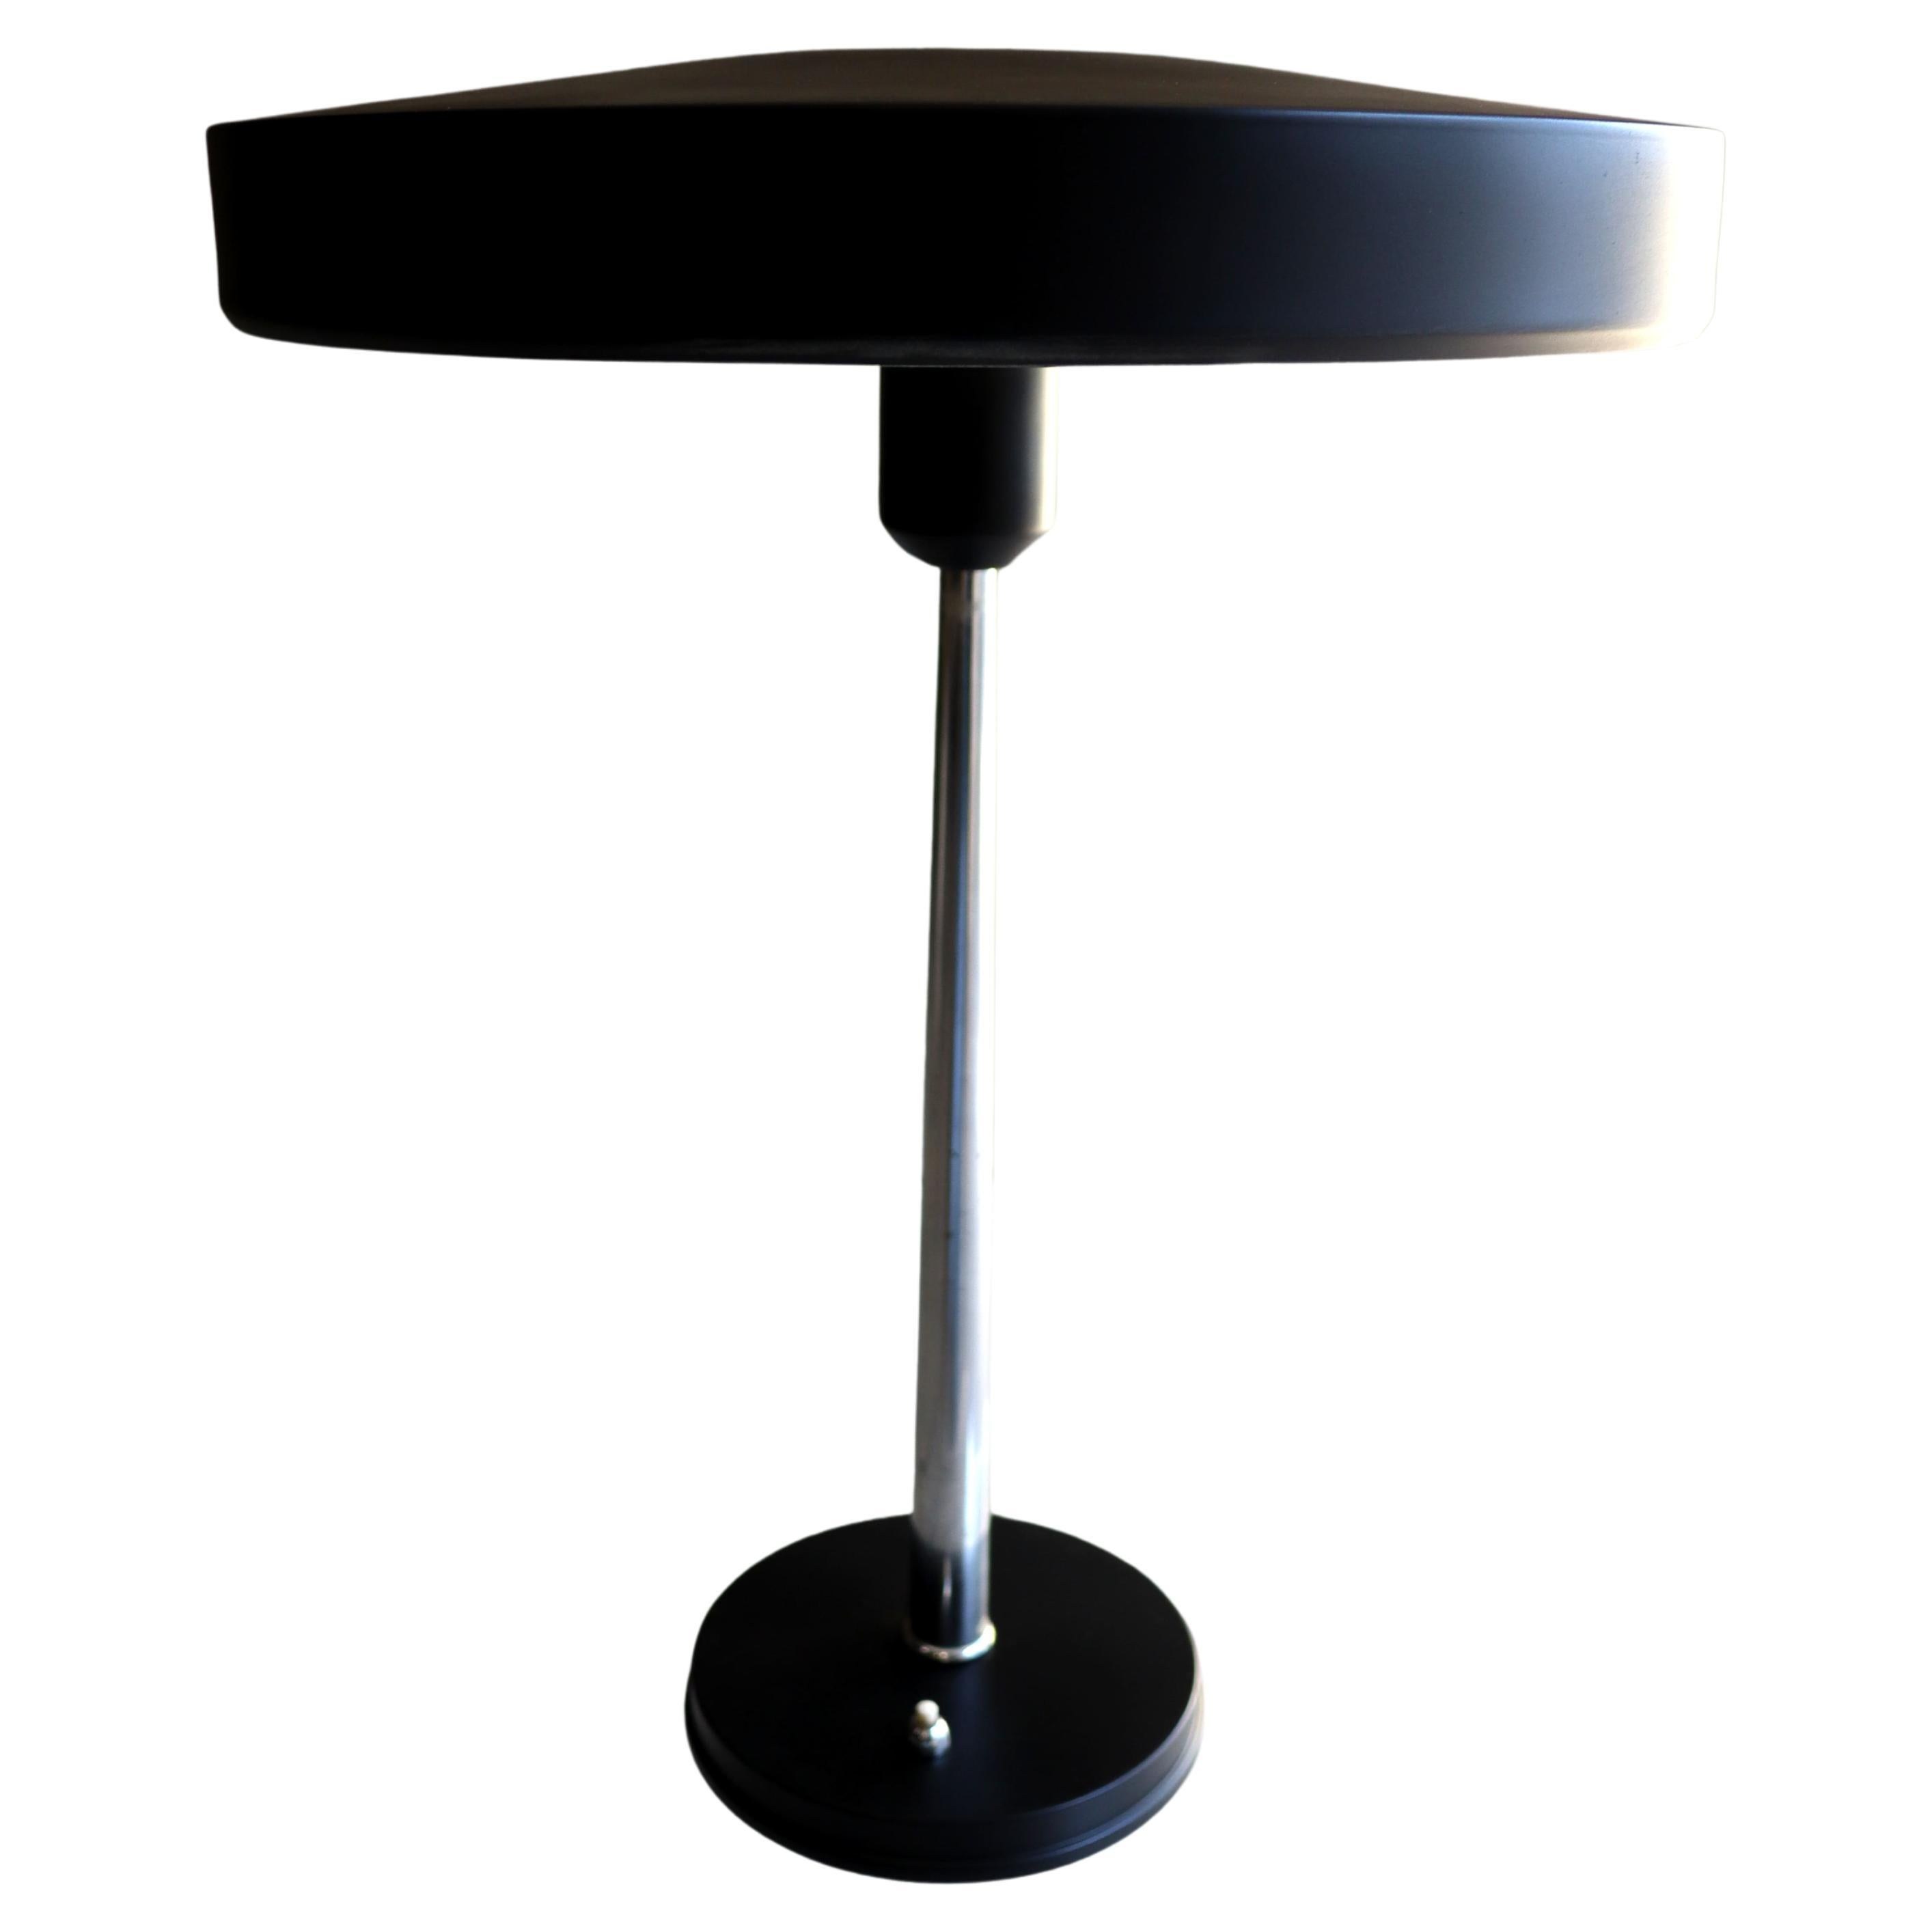 Louis Kalff - Major - Timur - Lampe de table - Philips - années 1960